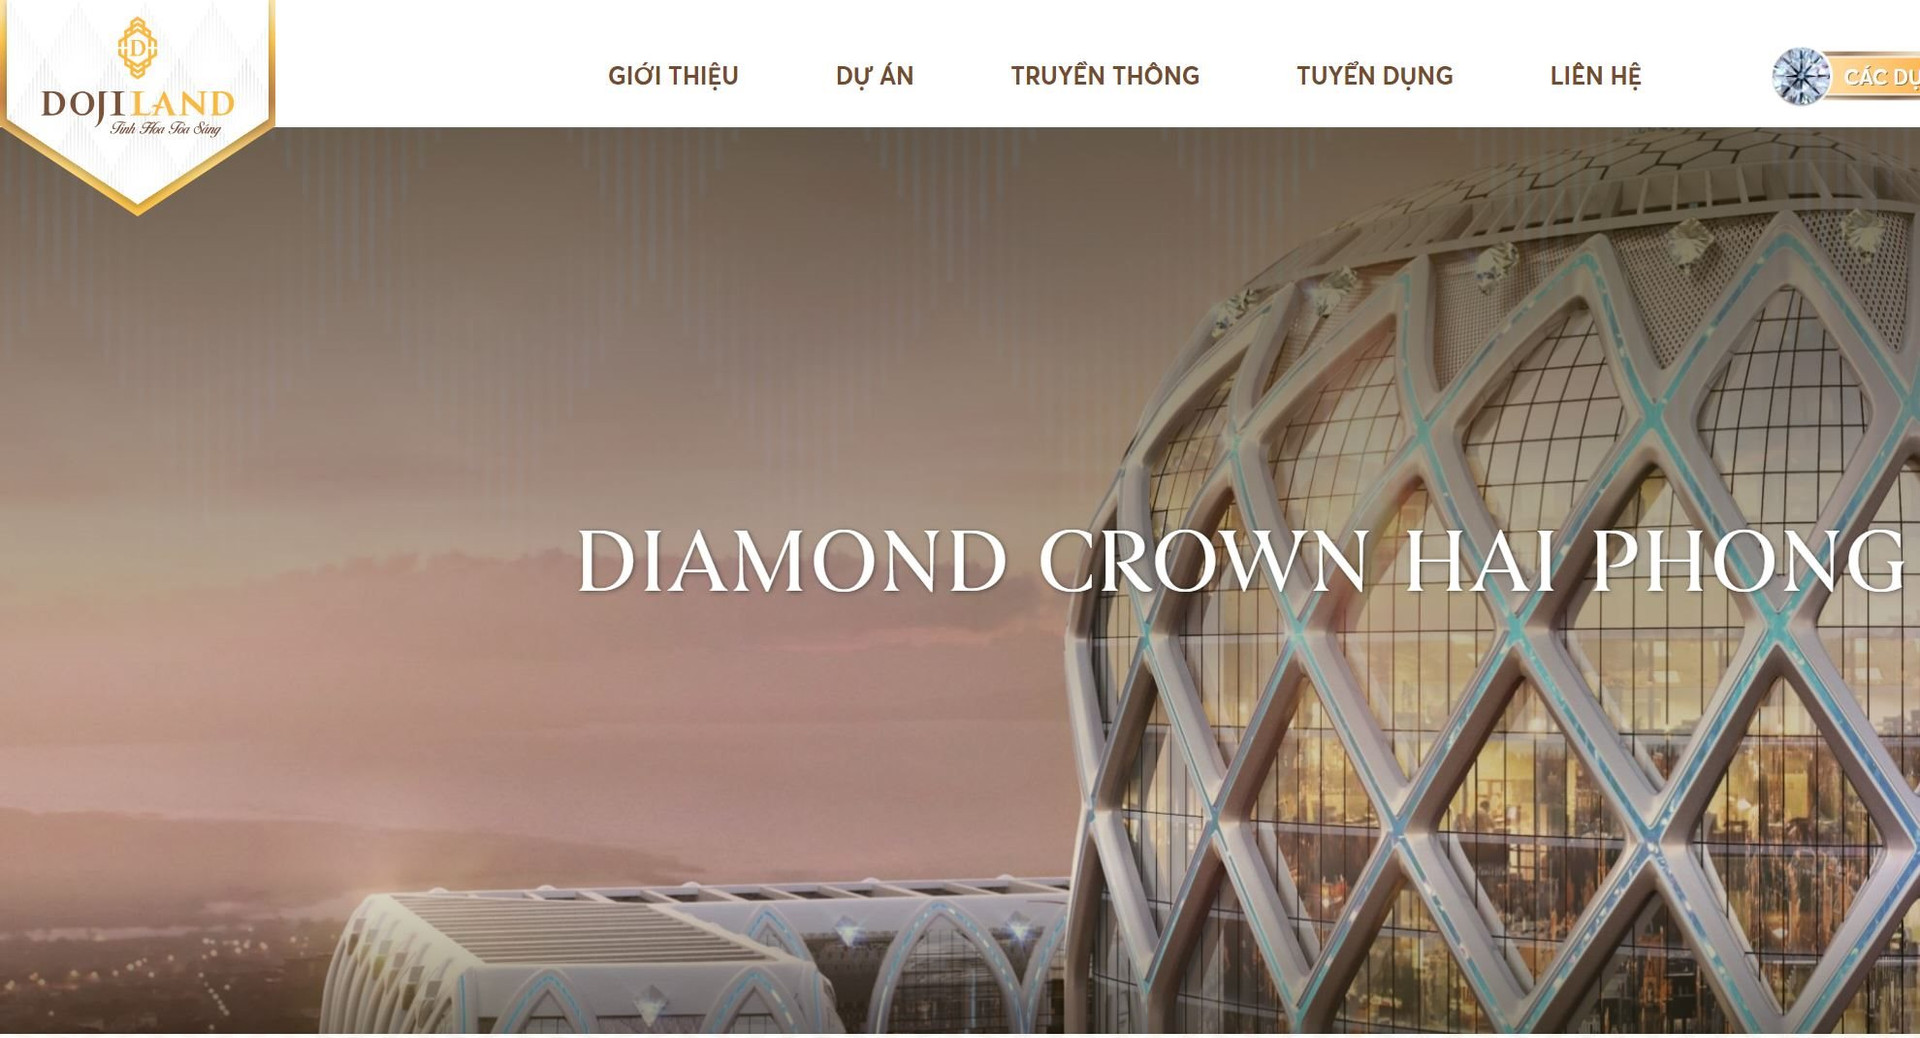 Dự án Diamond Crown Complex Hai Phong – Khởi đầu cho sự lớn mạnh của DOJILAND tại thị trường Hải Phòng